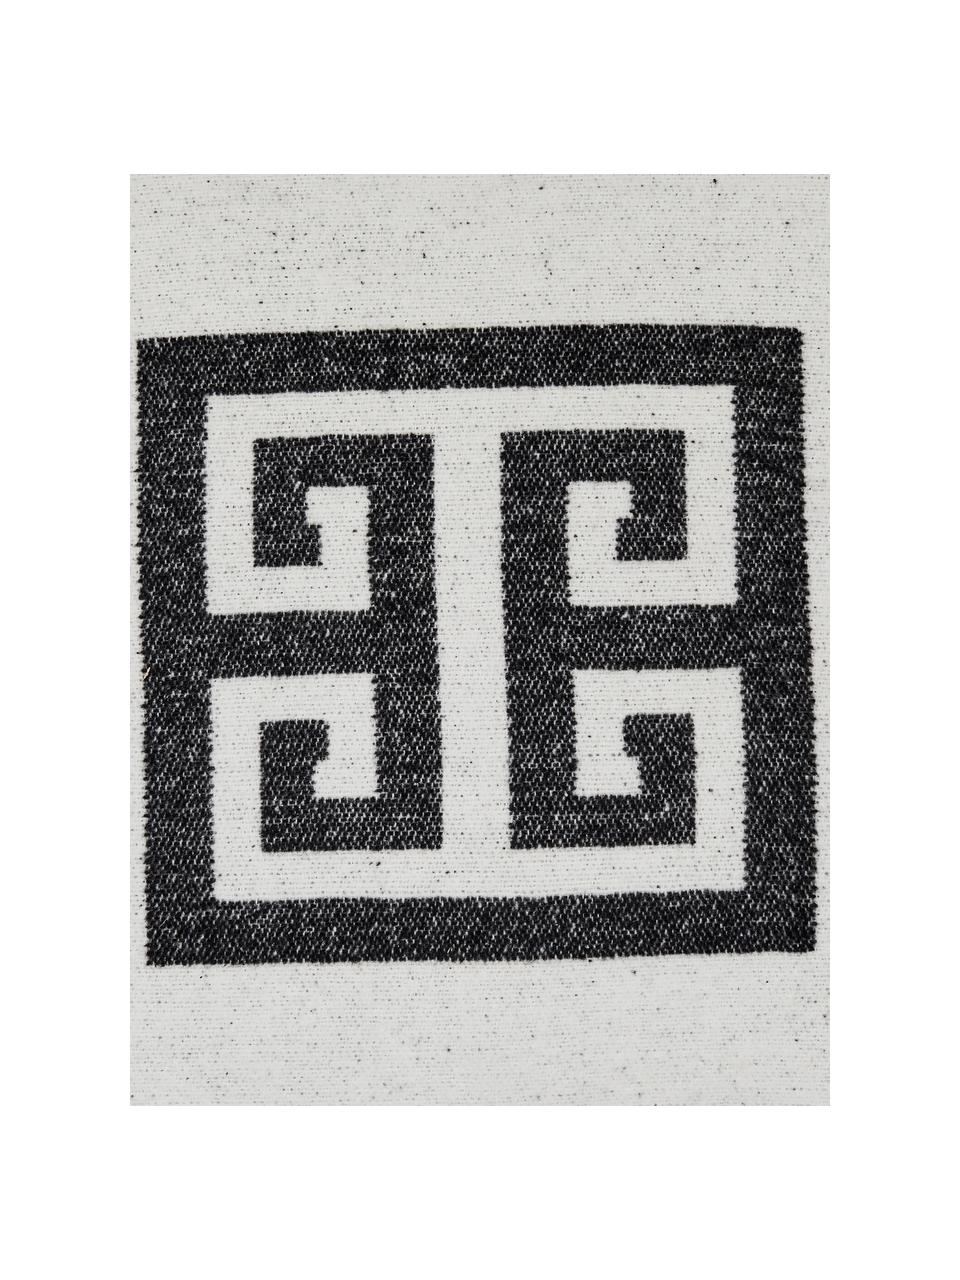 Kissenhülle Lugano in Schwarz/Weiß mit grafischem Muster, 100% Polyester, Schwarz, Gebrochenes Weiß, B 45 x L 45 cm